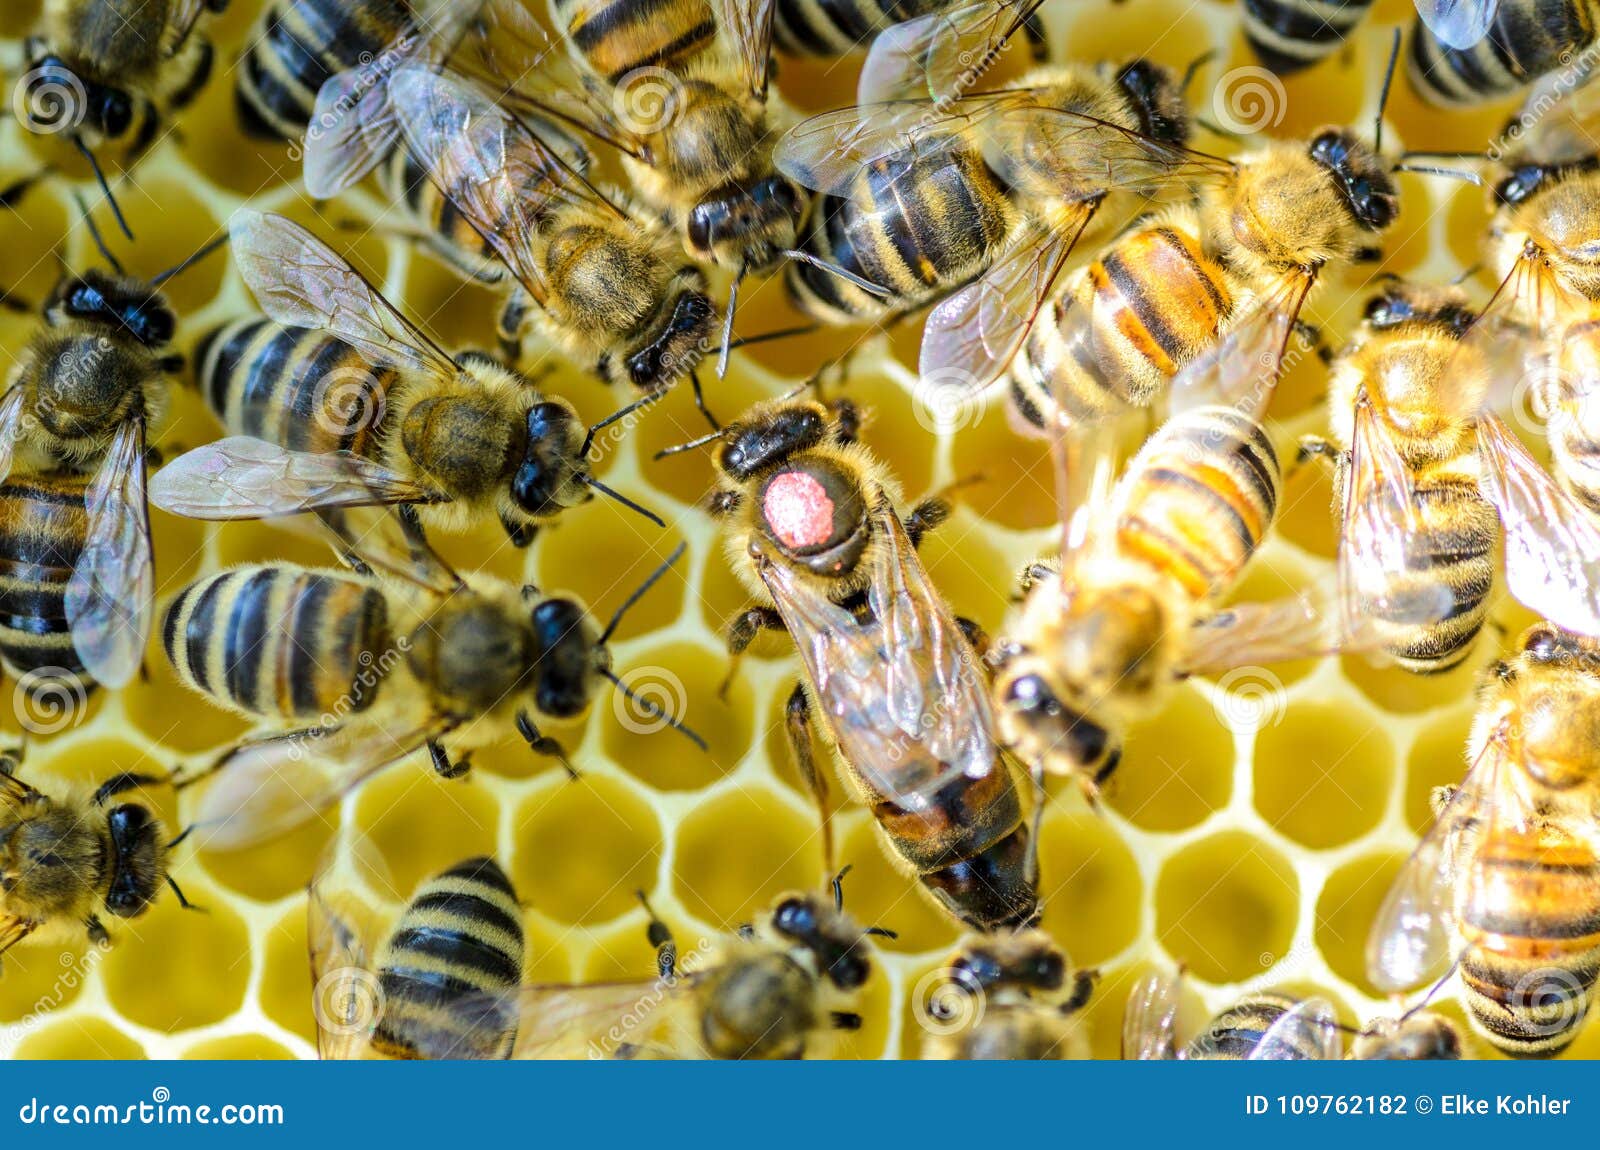 Как можно стать пчелой. Королева пчел. Матка пчелы. Пчела Королева матка. Королева среди пчел.